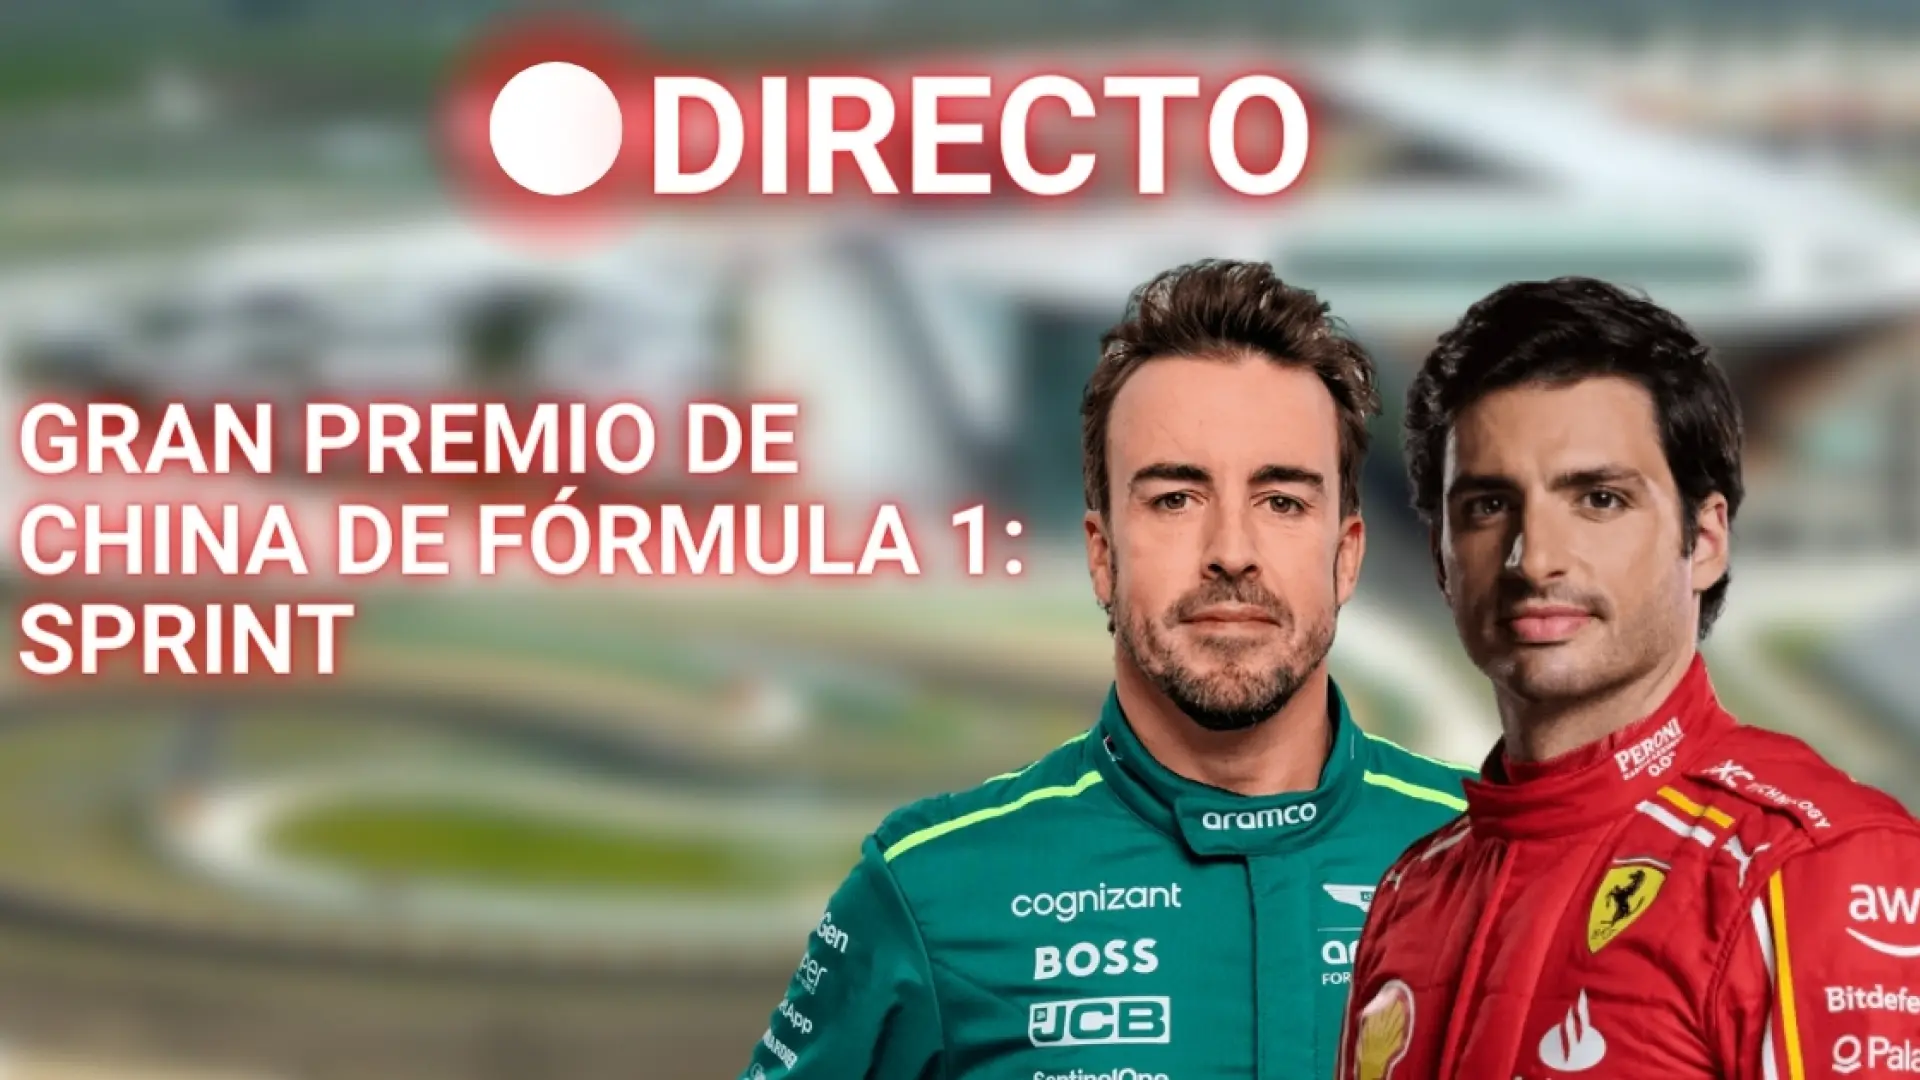 Gran Premio de China de Fórmula 1, en directo: resultados y última hora de Fernando Alonso y Carlos Sainz en el sprint